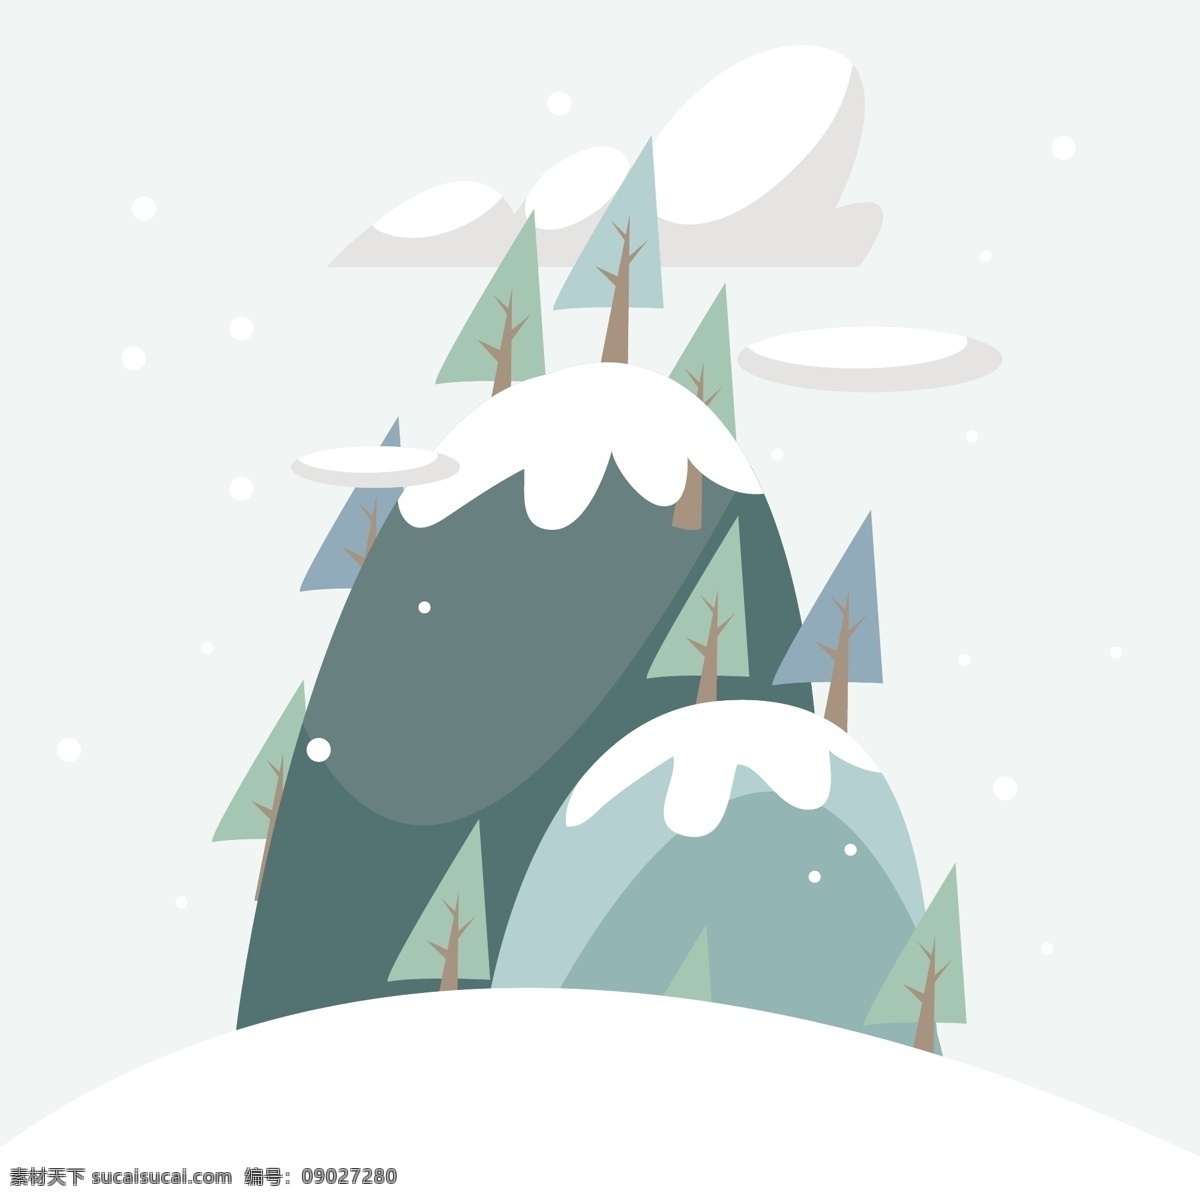 冬天 背景 冬季 雪景 自然 山 壁纸 平 冬季背景 平面设计 自然背景 高山 雪背景 下雪